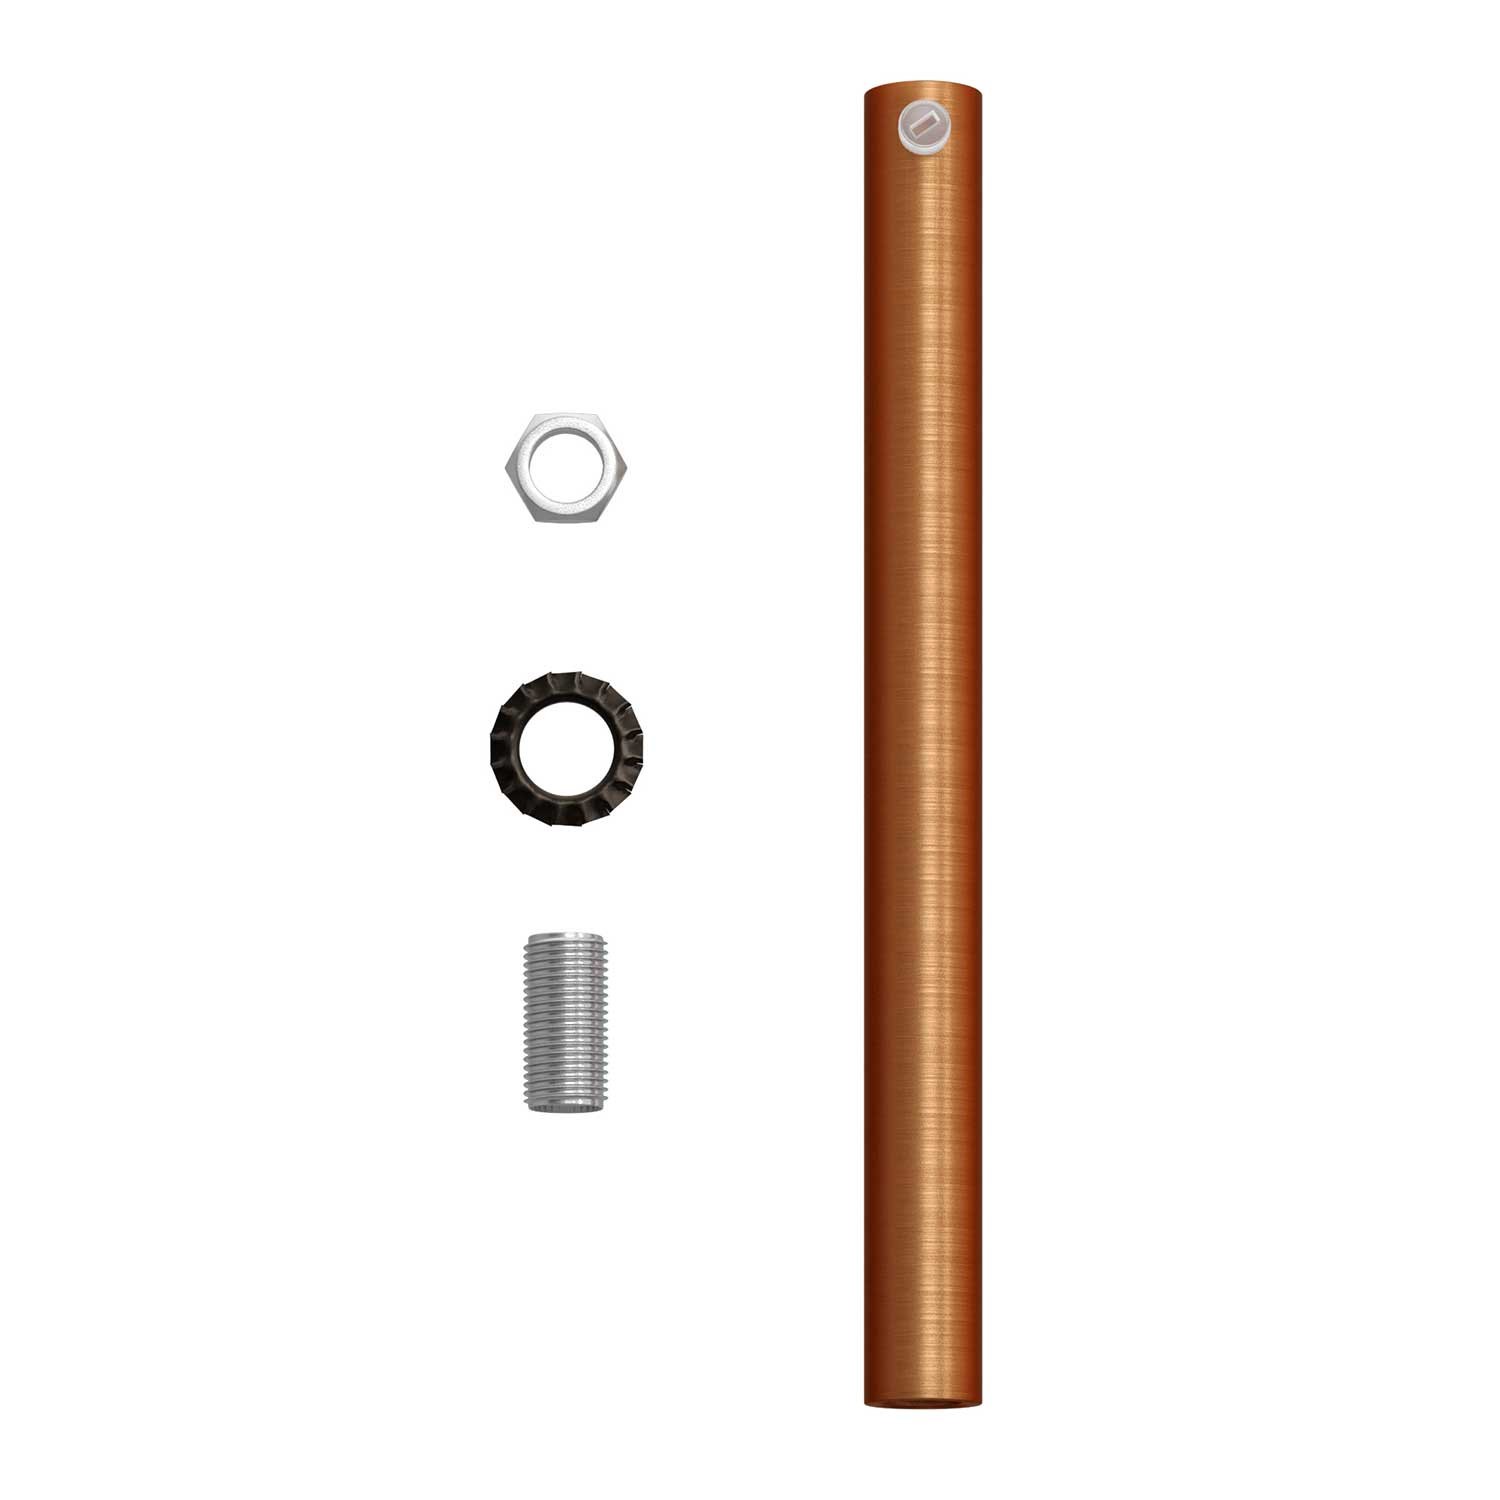 Cylindrisk kabelklemme af metal, længde 15 cm, komplet med stang, møtrik og skive